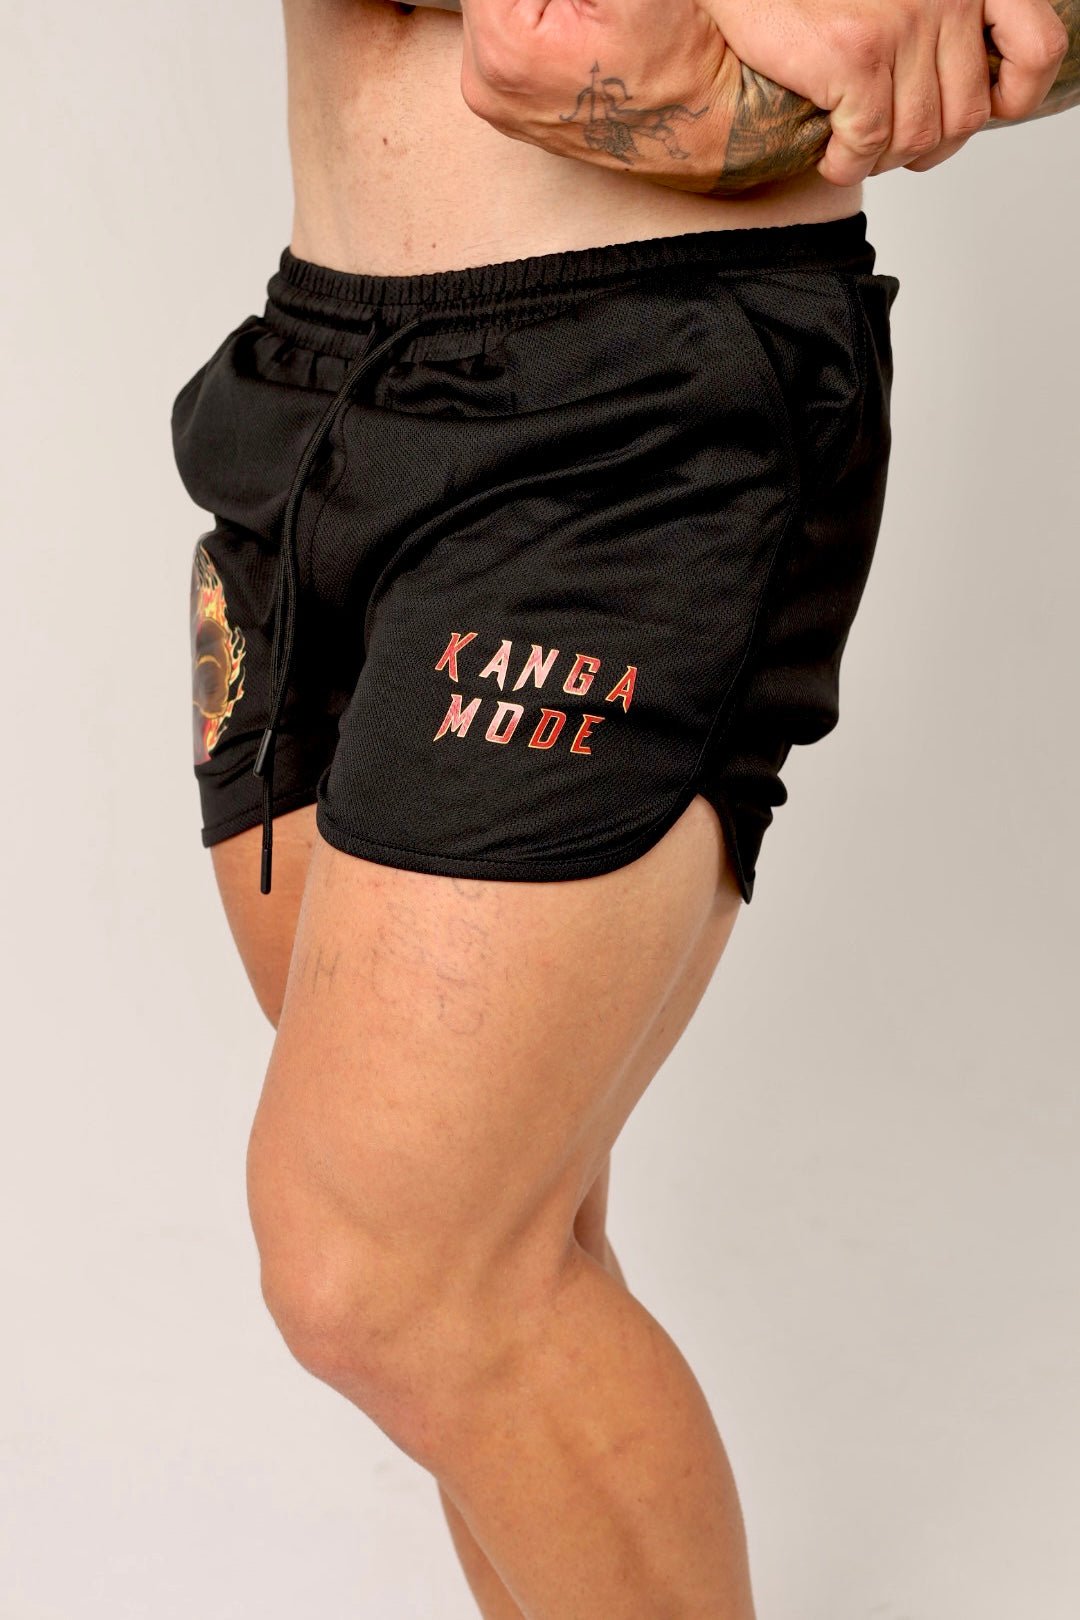 Kanga Mode Shorts - GYMROOS